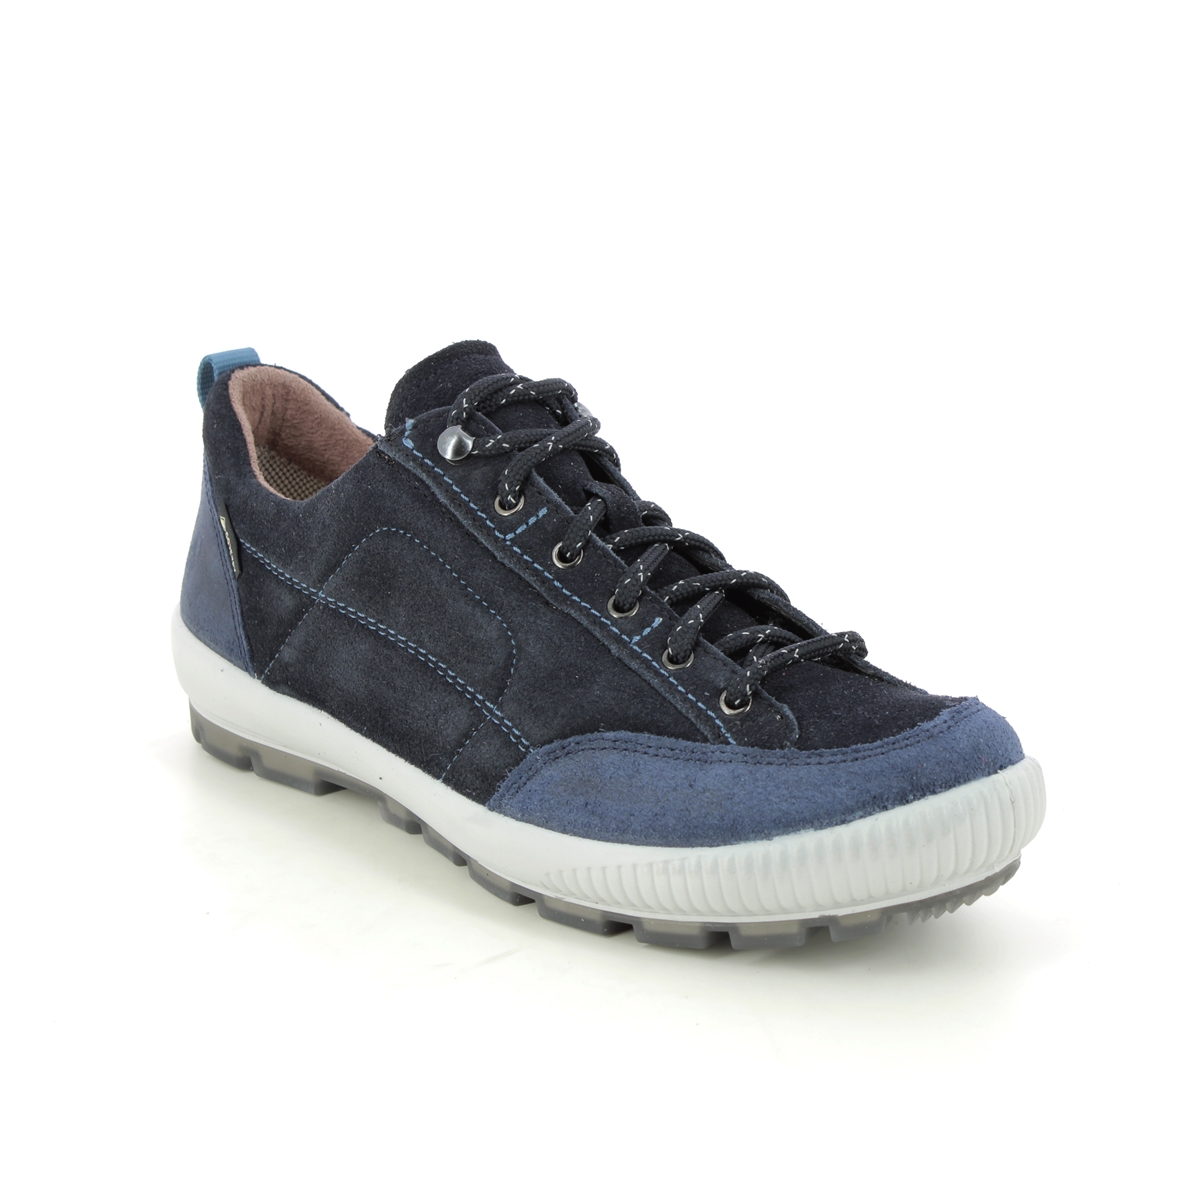 Legero Tanaro Trek Gtx Navy Womens Walking Shoes 2000210-8000 in a Plain Leather in Size 5